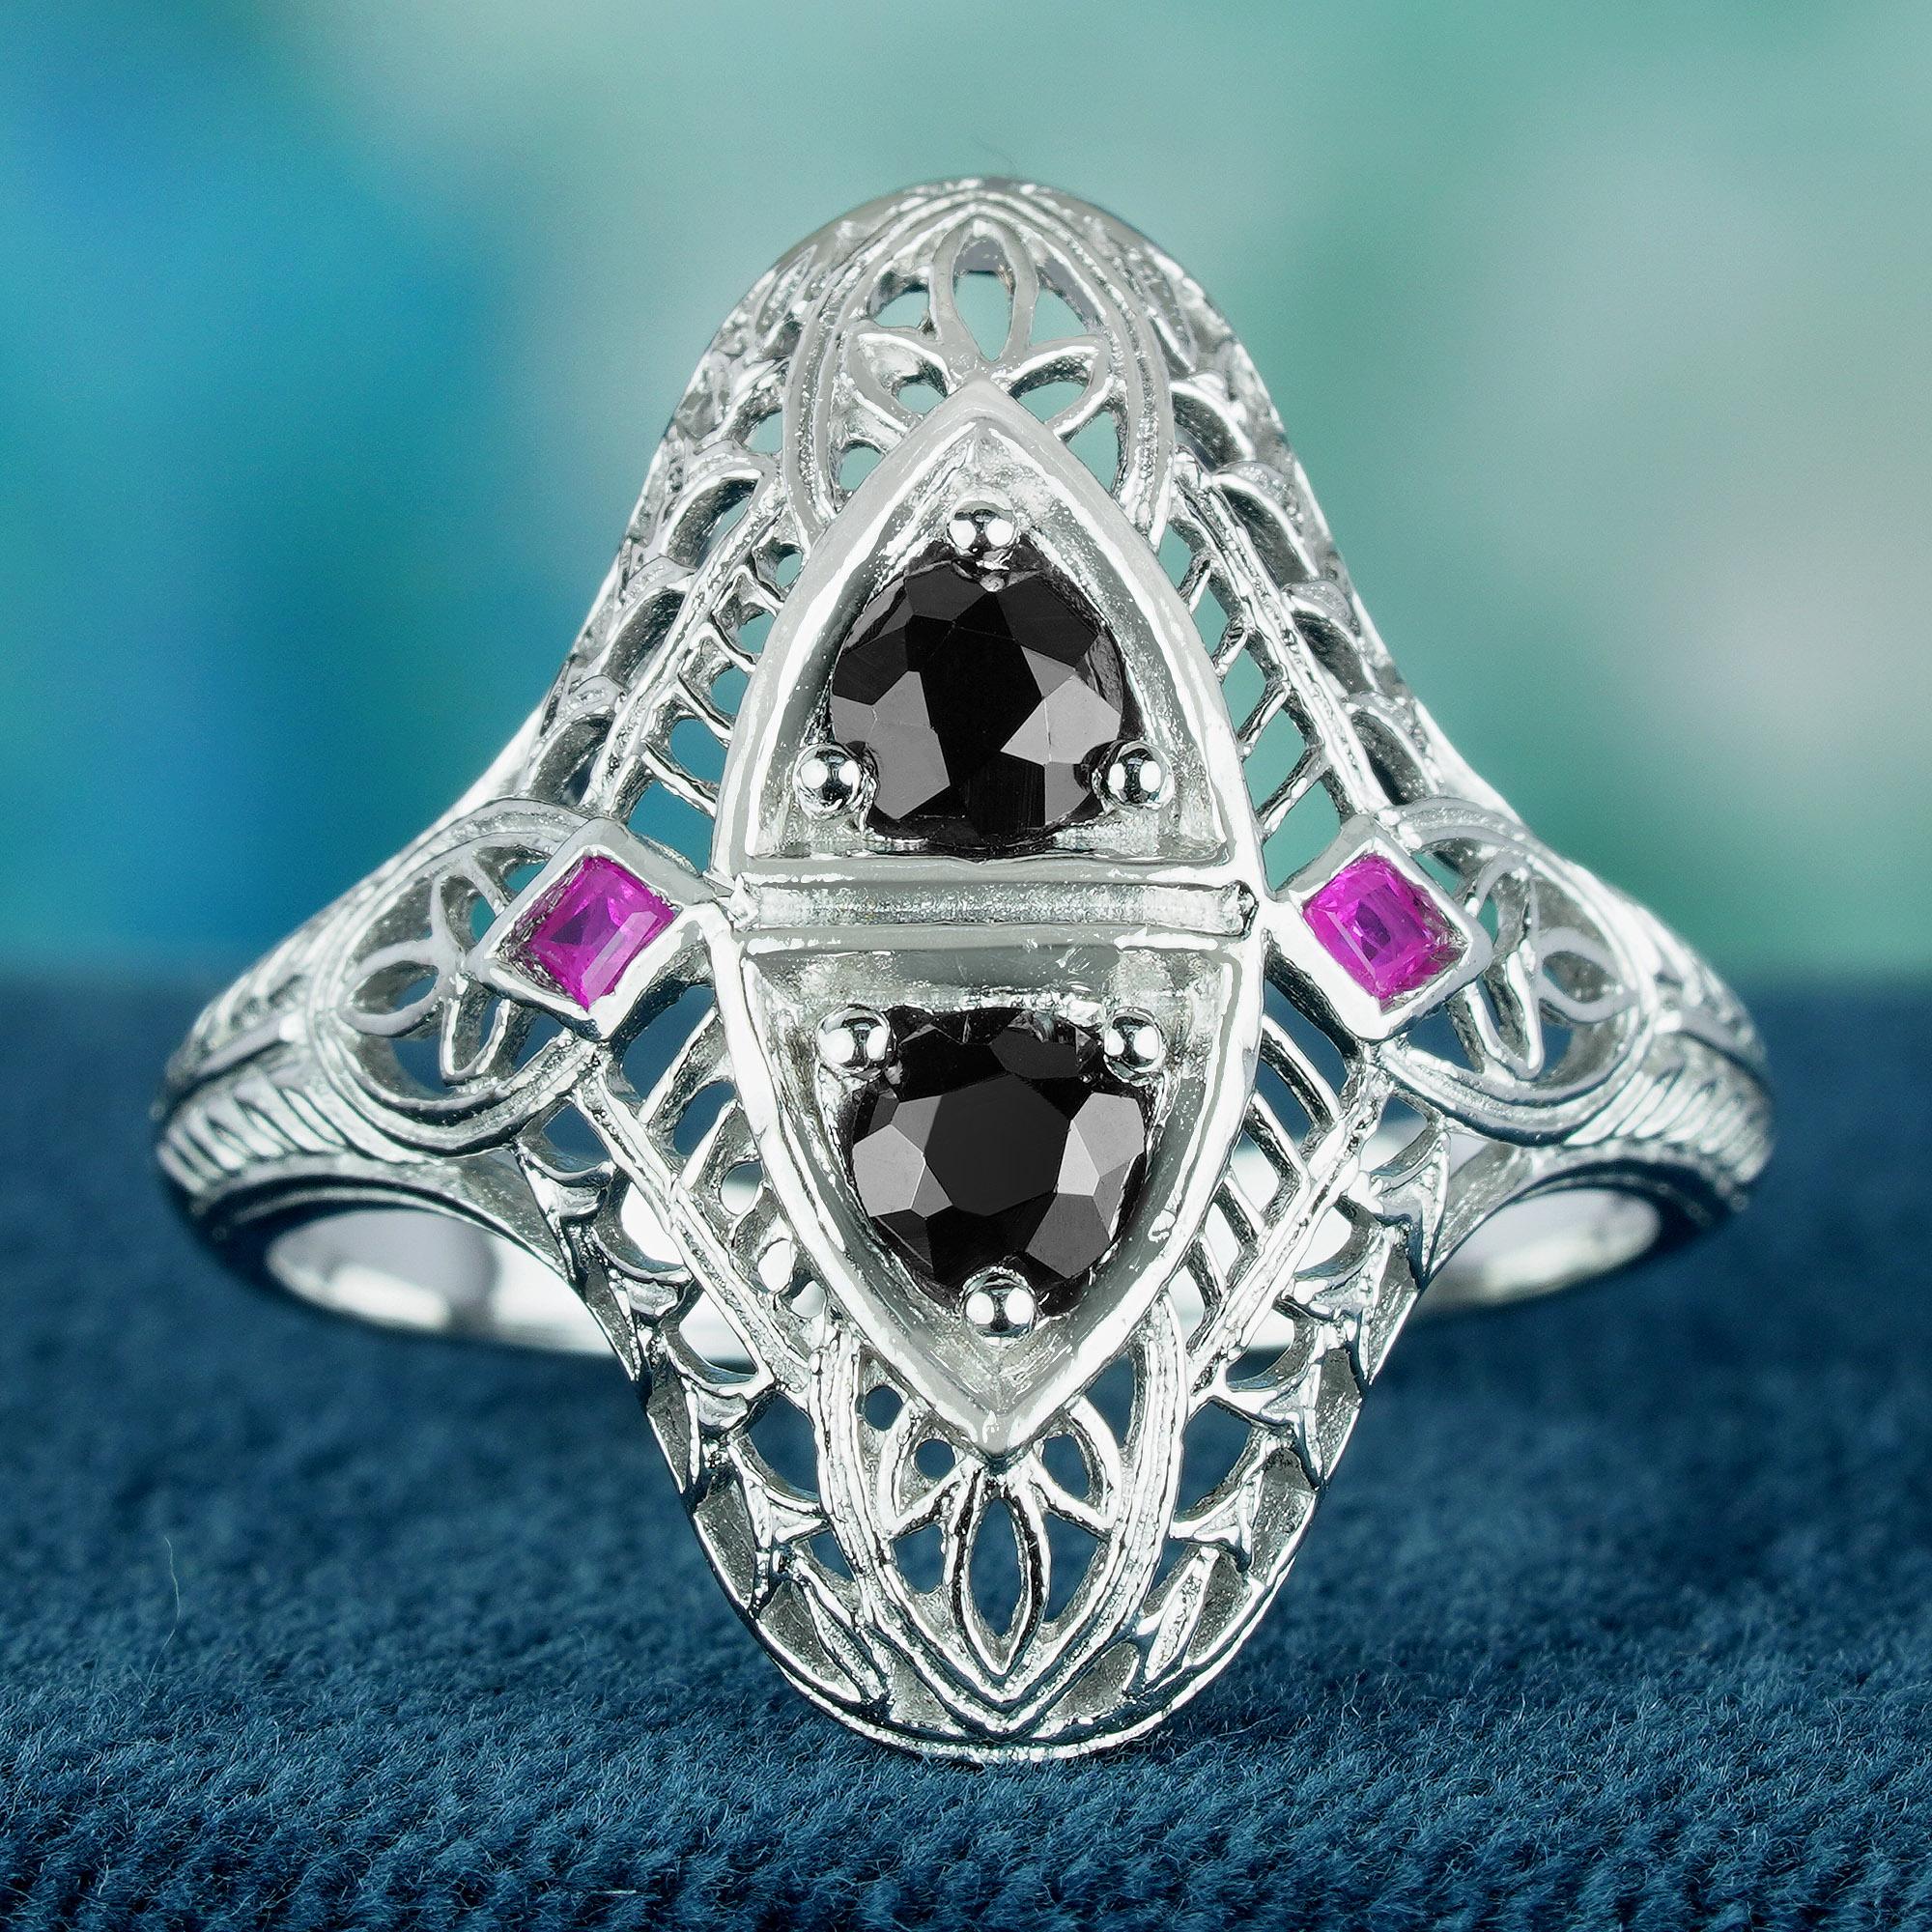 Dieser exquisite Ring zeigt ein Vintage-Design im Art-Déco-Stil mit zwei runden, natürlichen Onyx-Edelsteinen, die in der Mitte des Rings in einer Perlenfassung anmutig herabfallen. Flankiert werden die Onyxsteine von kleineren rosafarbenen